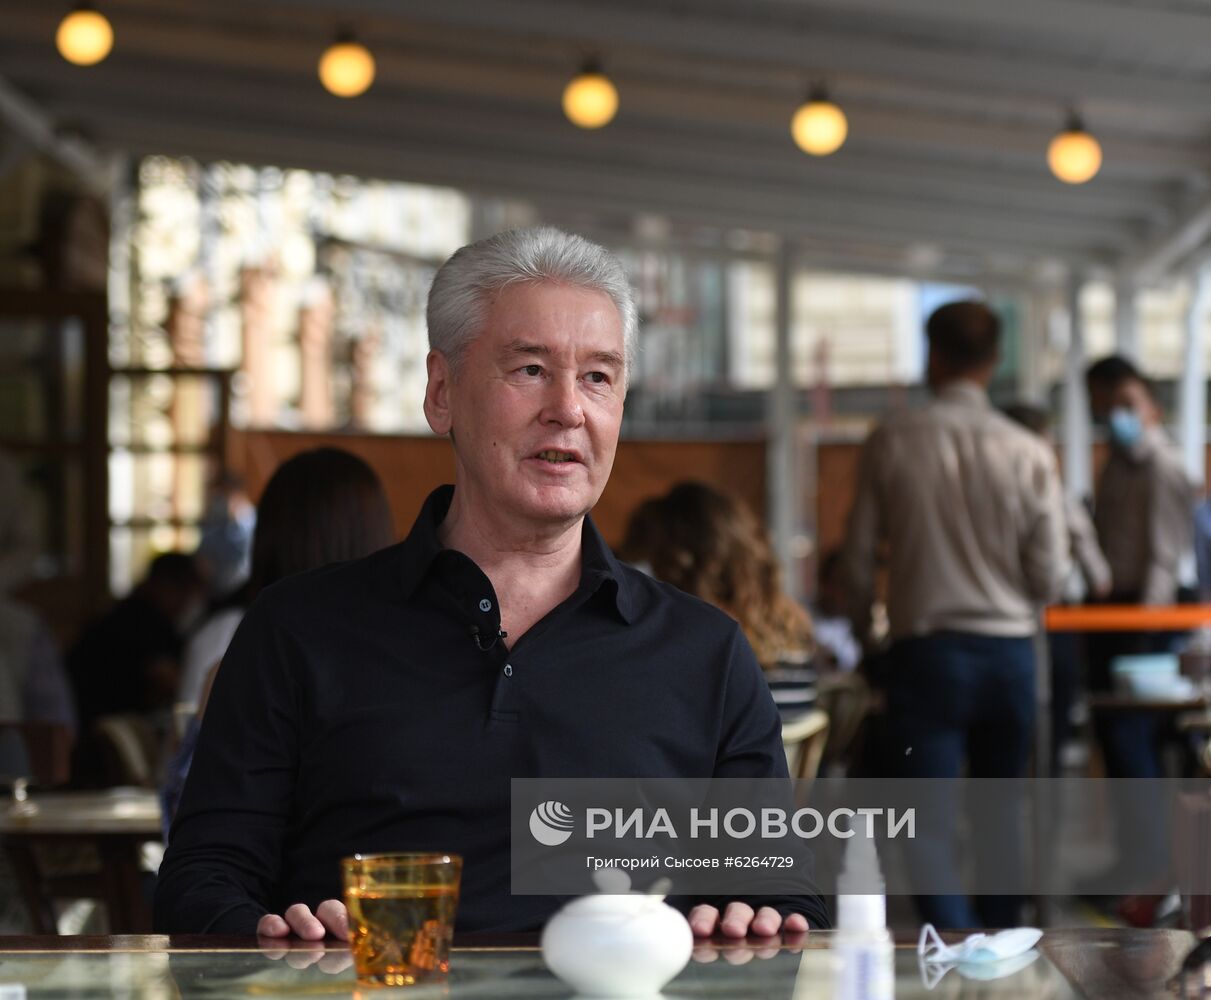 Мэр Москвы Собянин встретился с рестораторами